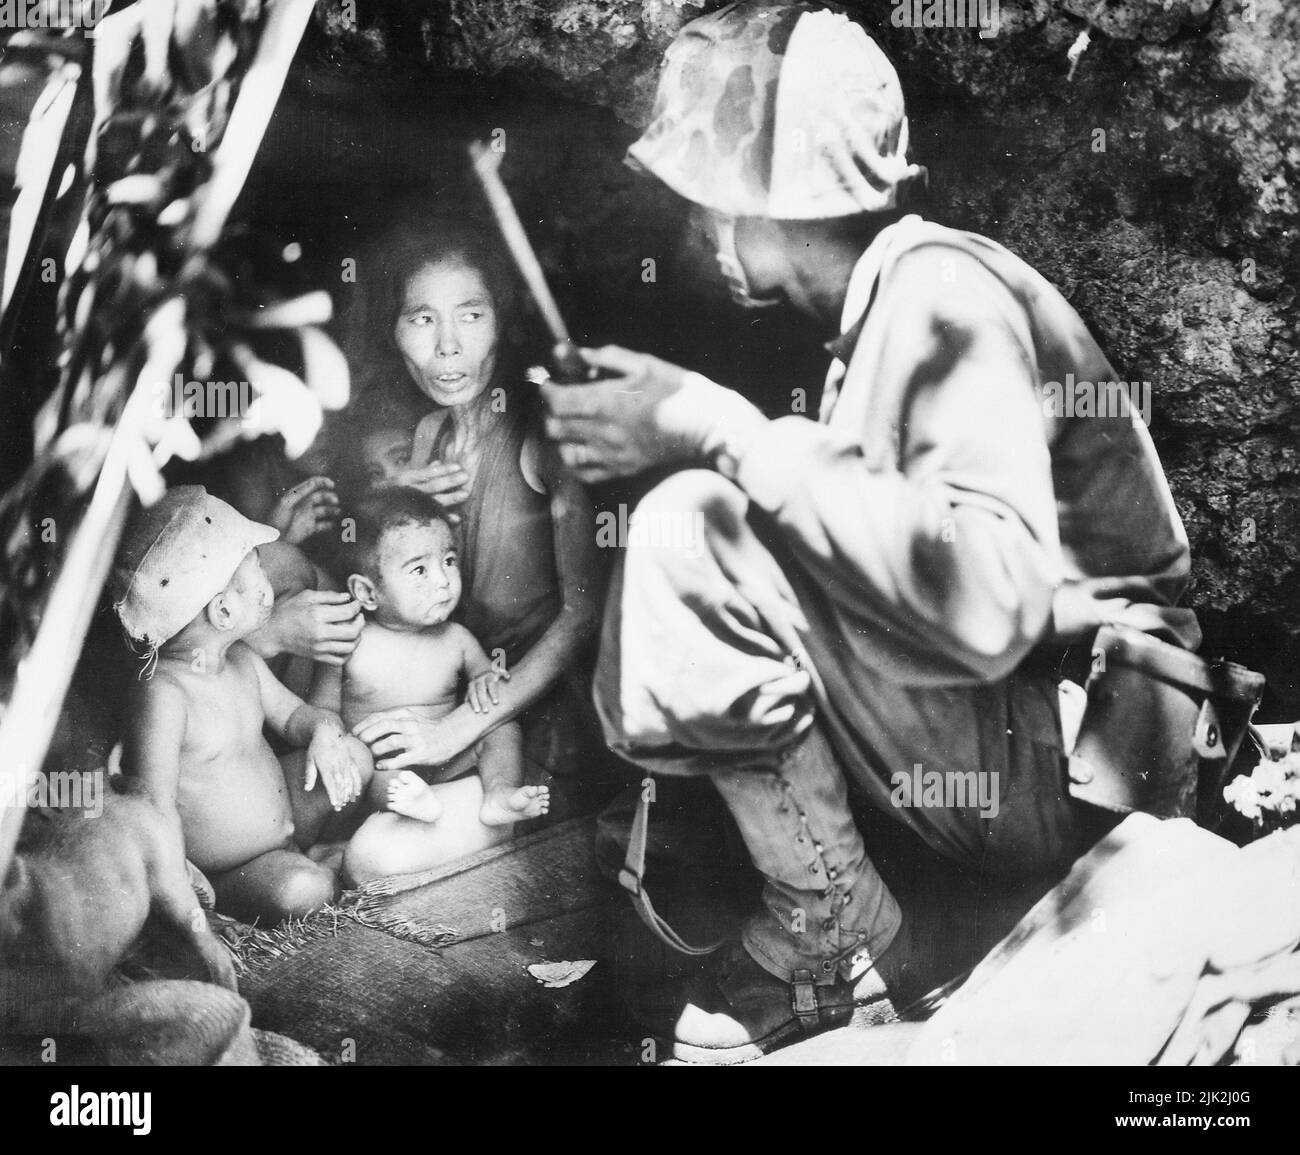 Un membre d'une patrouille maritime sur Saipan trouvé cette famille de Japs se cachant dans une grotte à flanc de colline. La mère, quatre enfants et un chien, a pris à l'abri des violents combats dans cette région. Banque D'Images